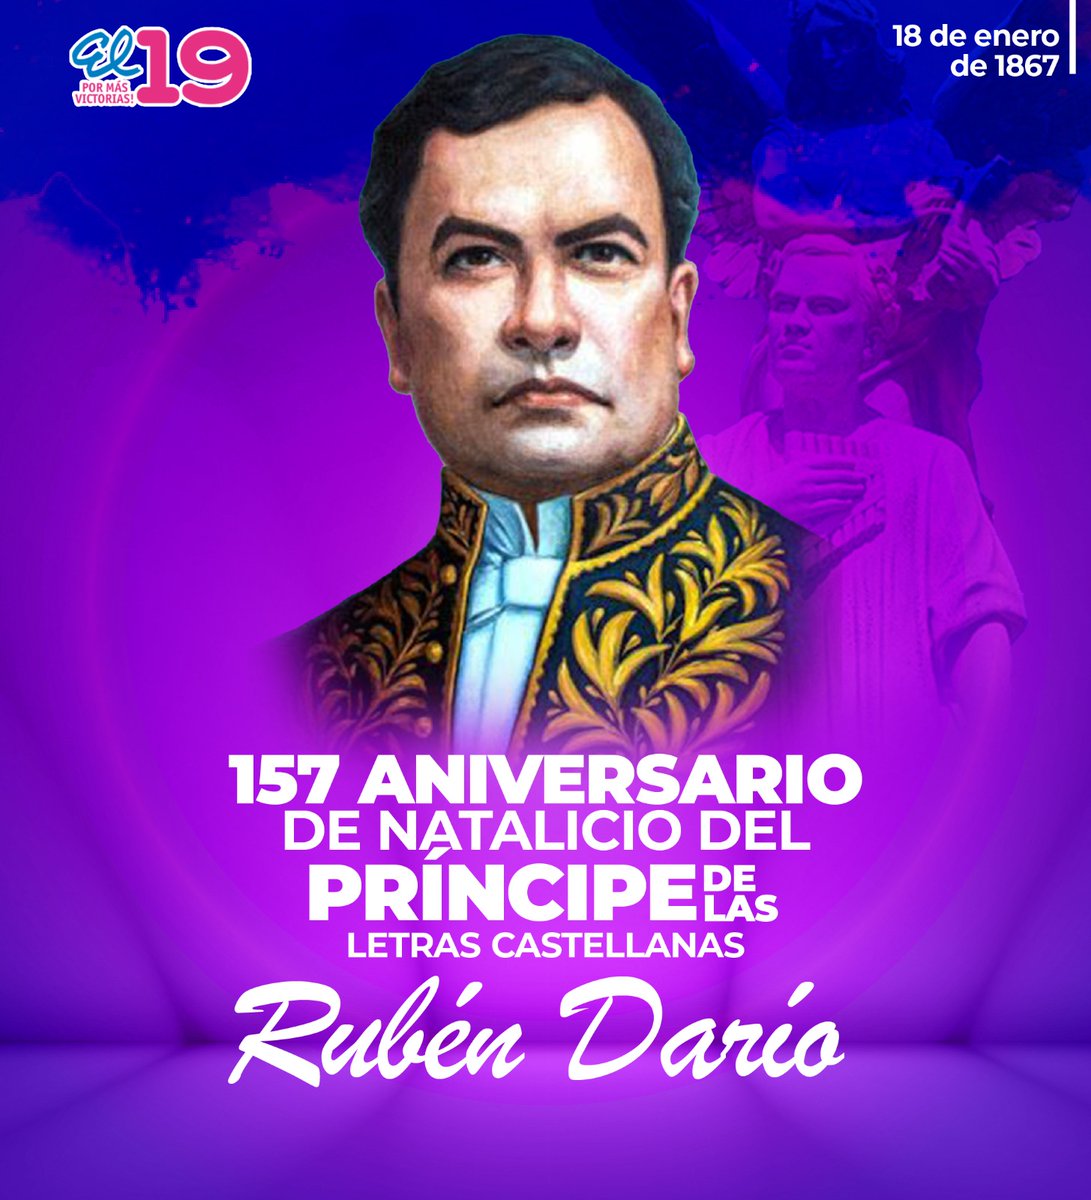 🤔 Cuál es tu poema favorito de Rubén Dario?? 

Los leo 👇

#DarioVidayEsperanza